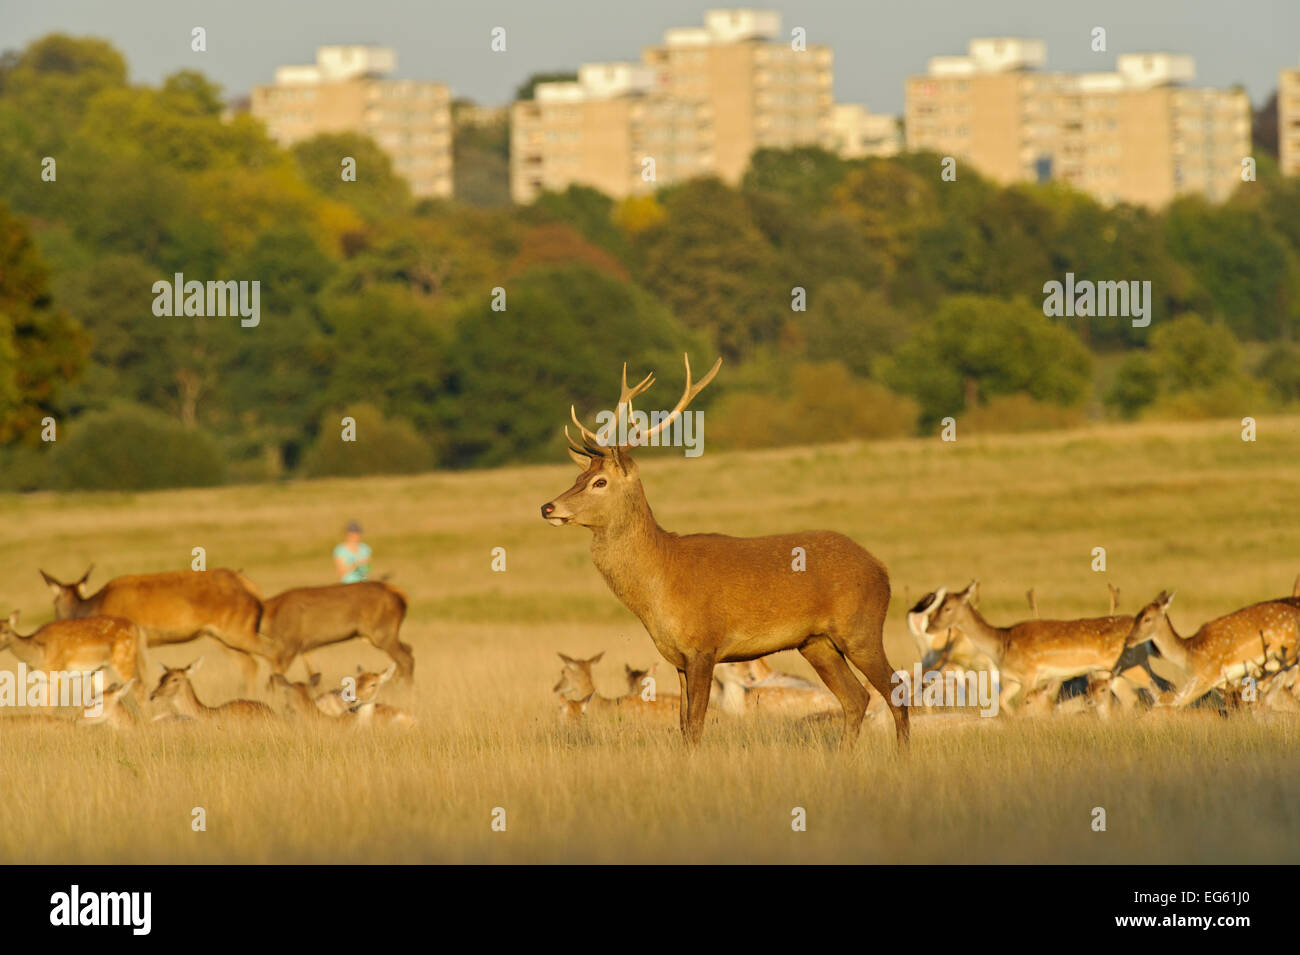 Red Deer (Cervus elaphus) à Richmond Park à Roehampton, maisons en arrière-plan, Londres, Angleterre, Royaume-Uni, septembre. Plaque Livre VISION 2020 Banque D'Images